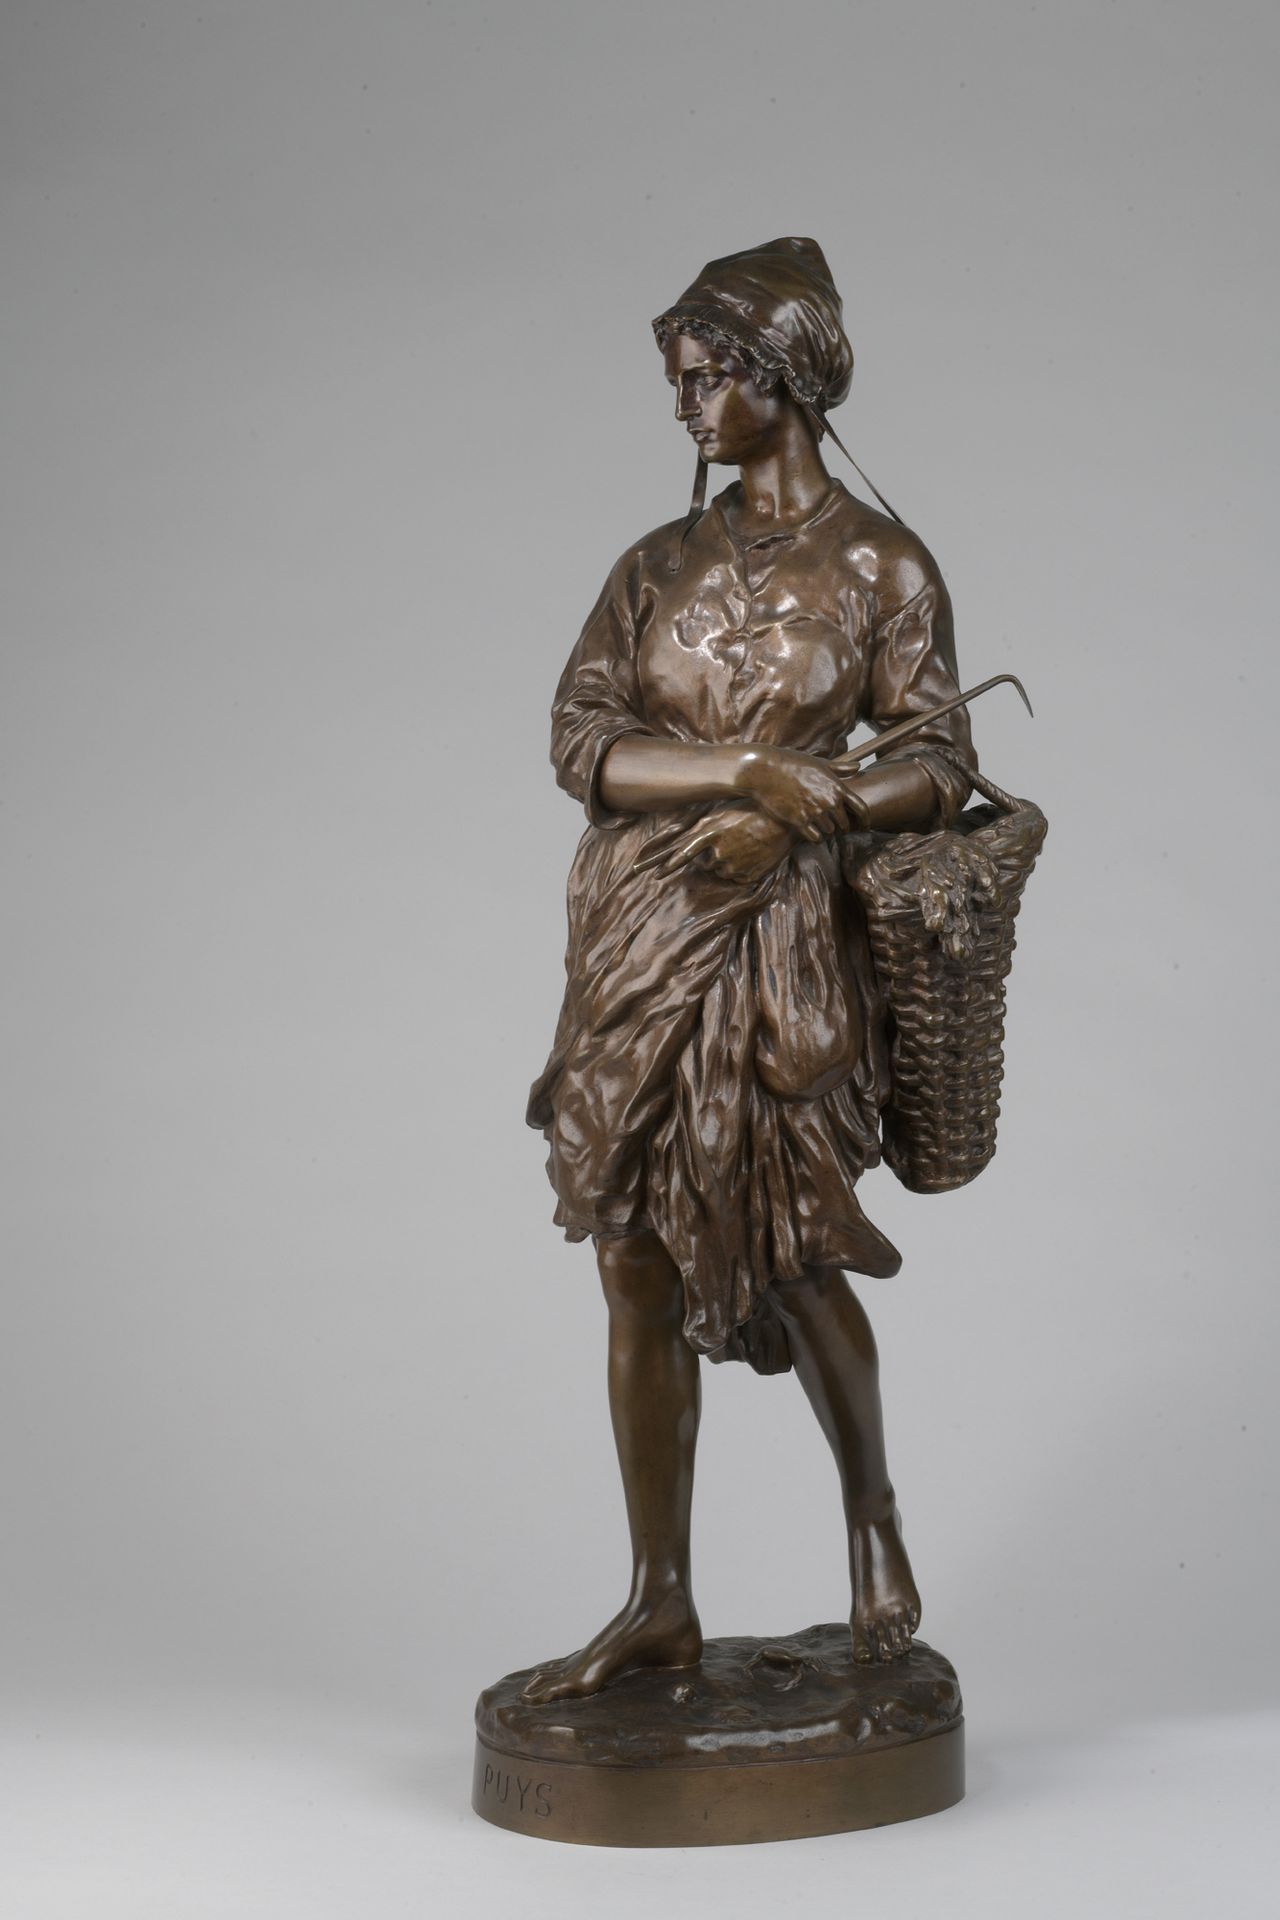 Null 让-巴蒂斯特-卡尔波 (1827-1875)

渔女维格诺特

模型创建于1874年。

青铜，带有红棕色的铜锈。

在阳台上以草书签名的JB Car&hellip;